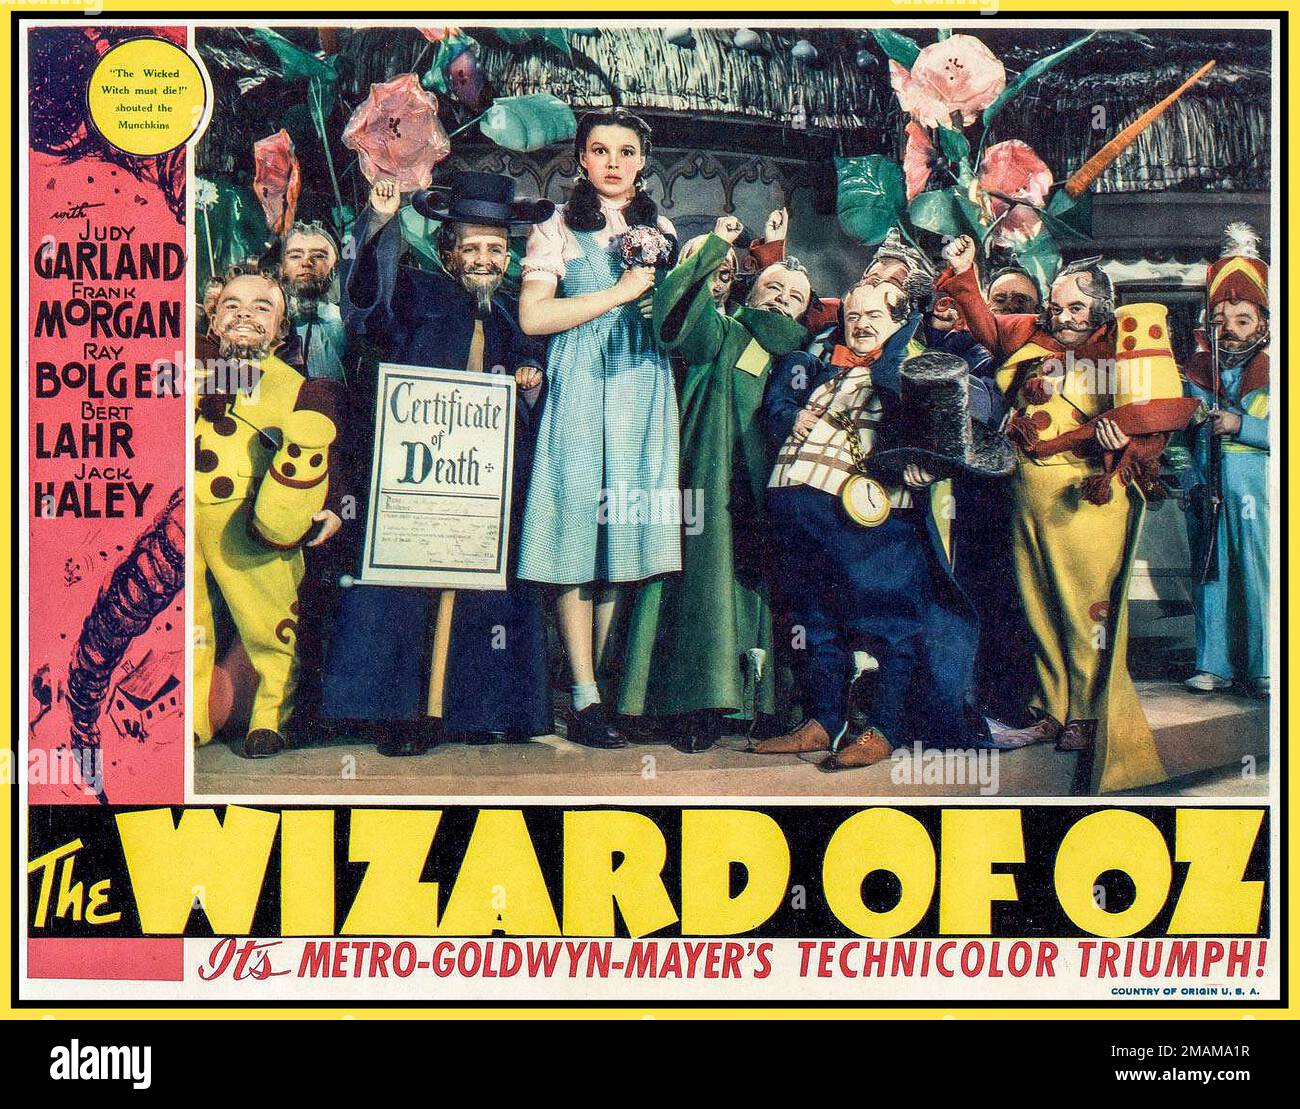 Vintage „Wizard of Oz“-Filmposter mit Judy Garland. Lobby-Karte aus der Originalversion von 1939 von The Wizard of Oz mit Judy Garland Frank Morgon, Ray Bolger, Bert Lahr, Jack Haley. MGM Hollywood USA Stockfoto